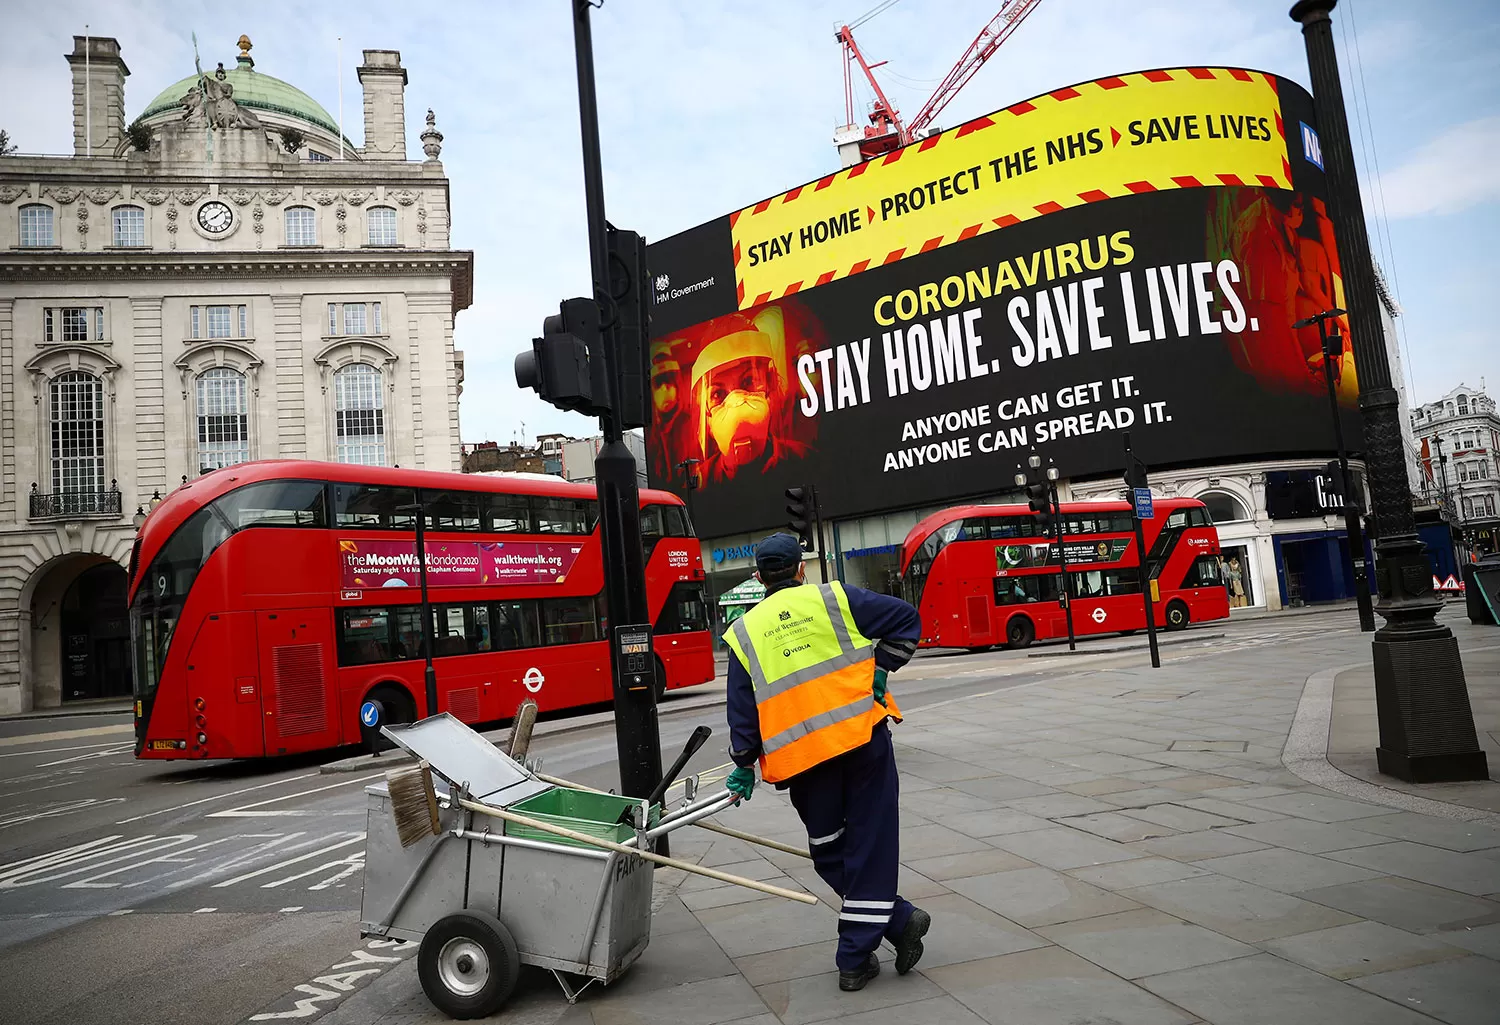 PUBLICIDAD. En Piccadilly Circus, la publicidad del Ministerio de salud es clara: quedate en casa, salvá vidas. REUTERS